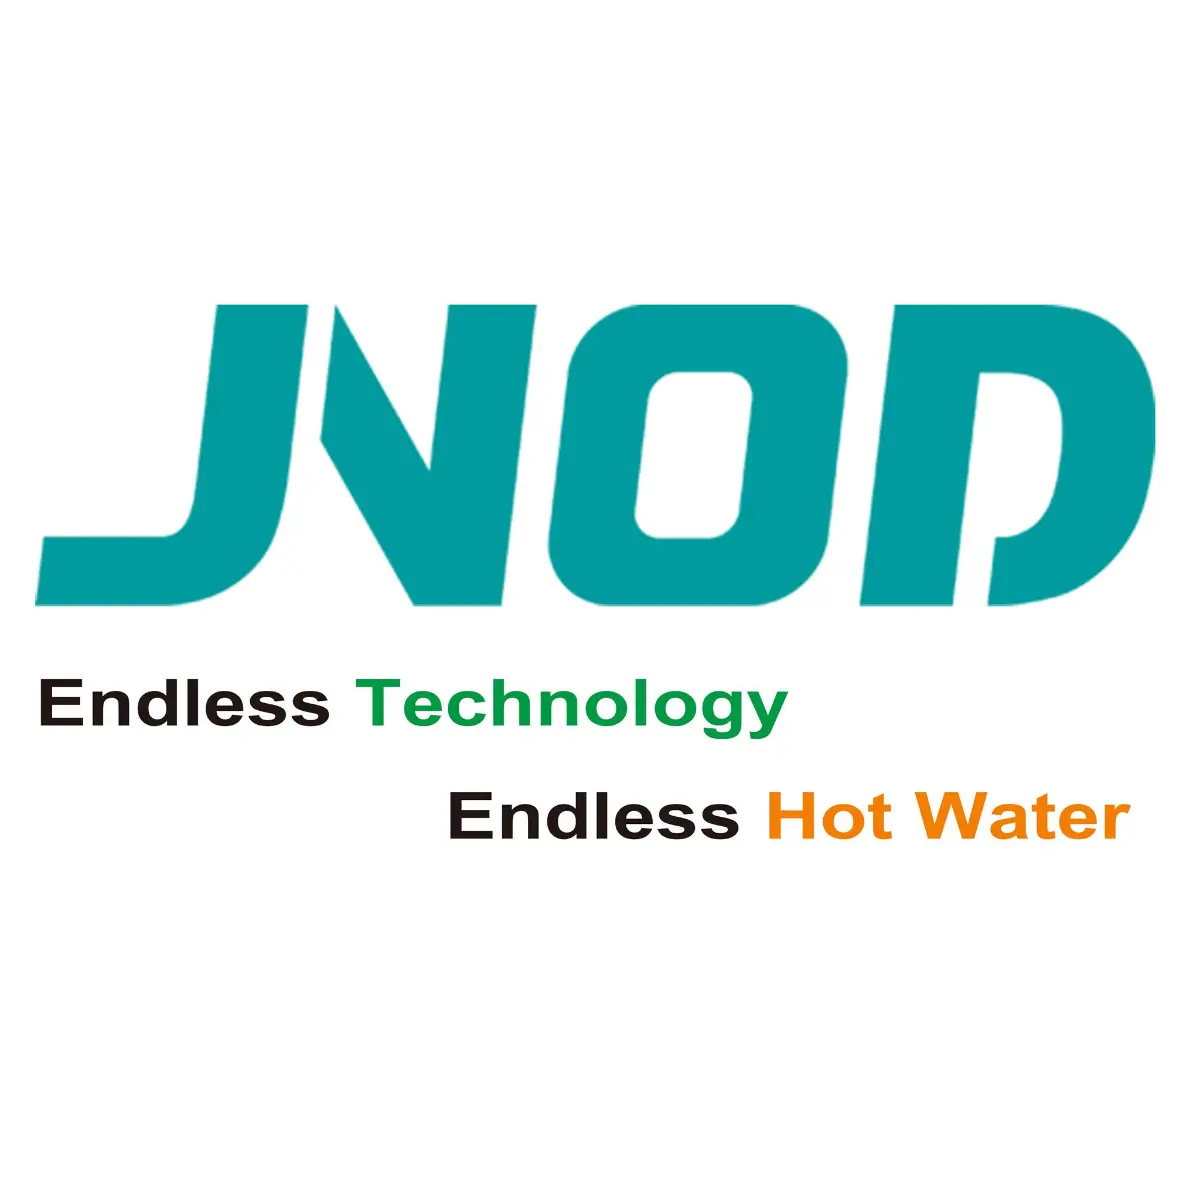 Jnod logo